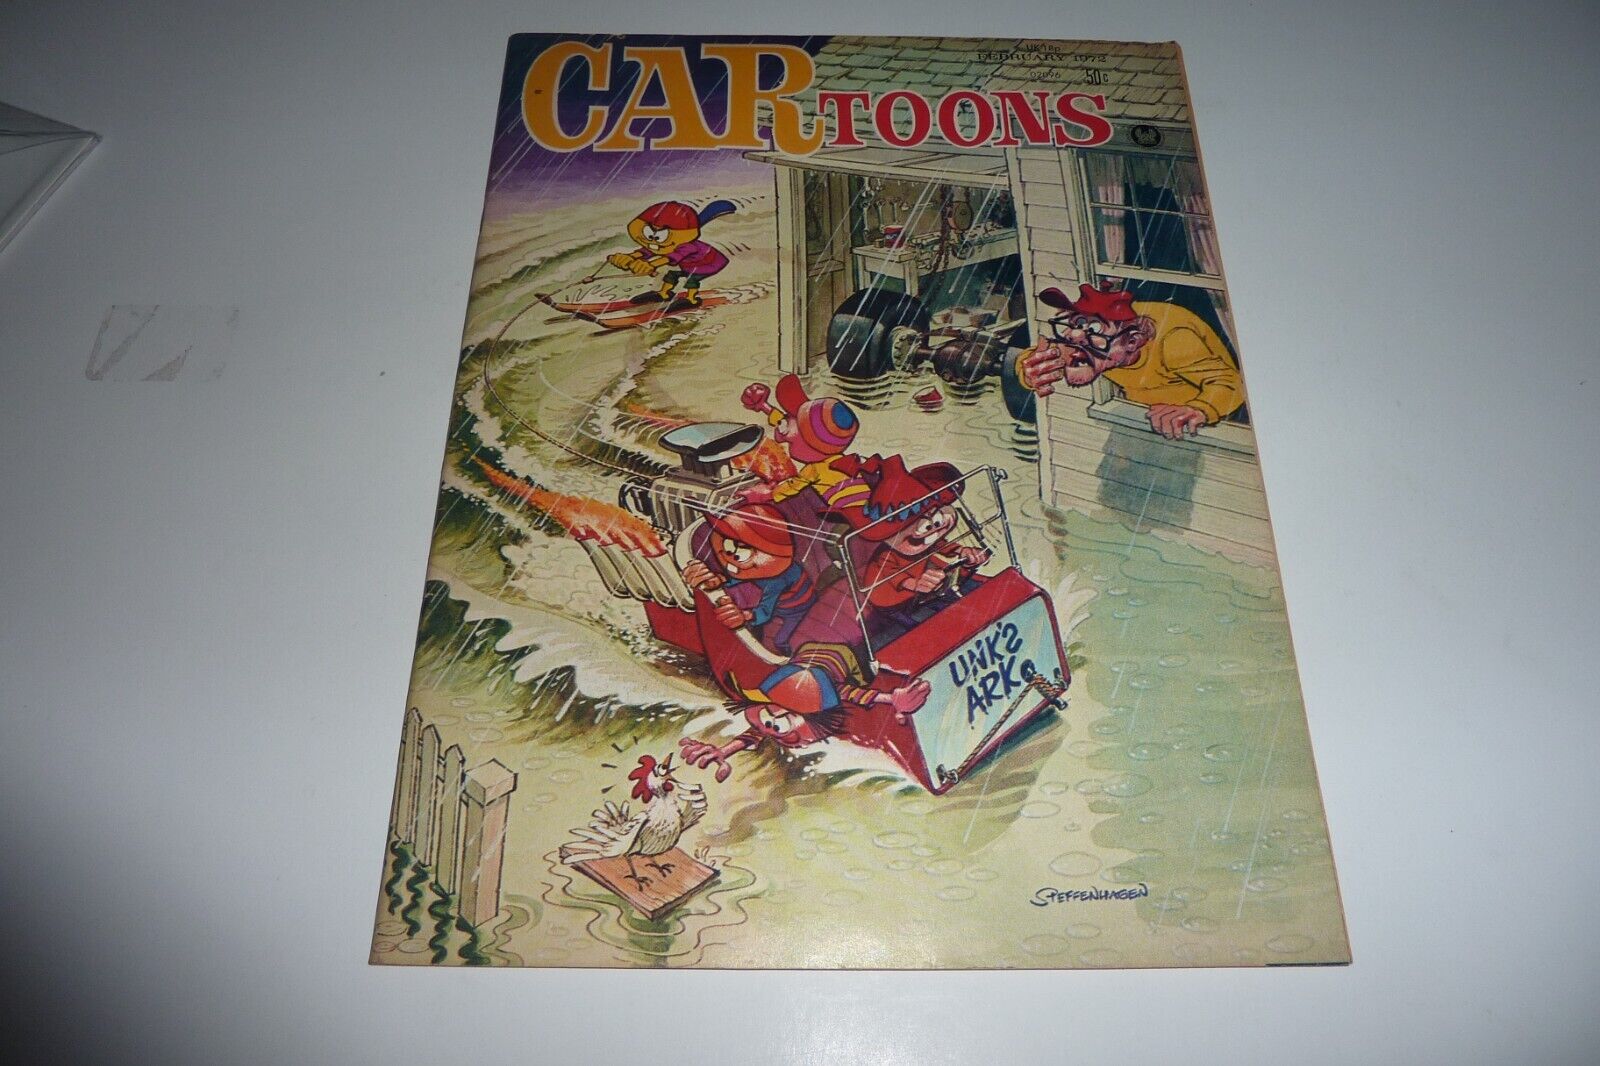 CAR TOONS Magazine Feb 1972 Automotive Humor Comics VG+ 4.5 *Read Description*